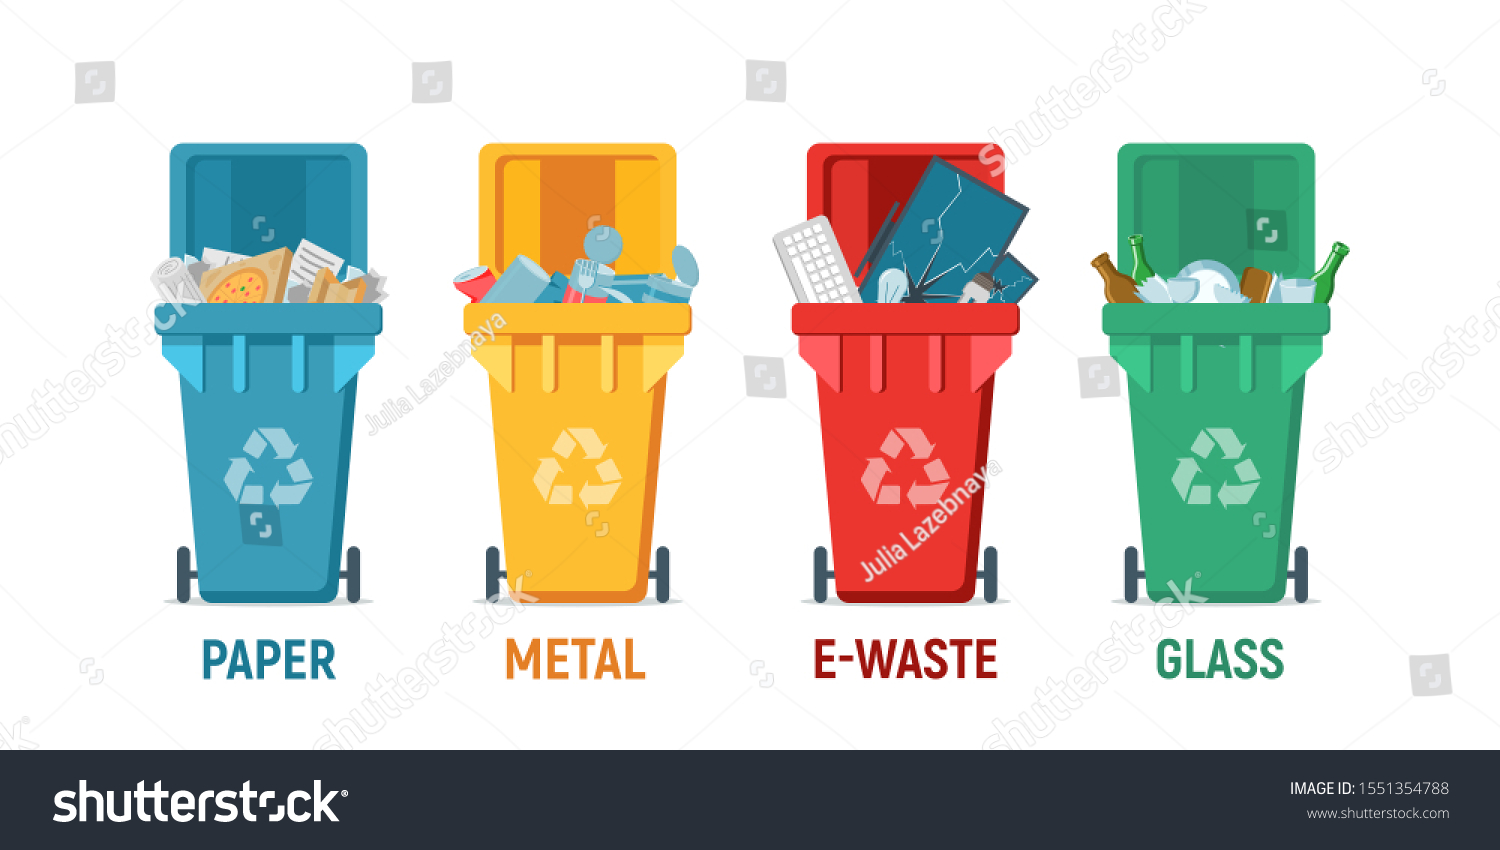 waste management dustbin